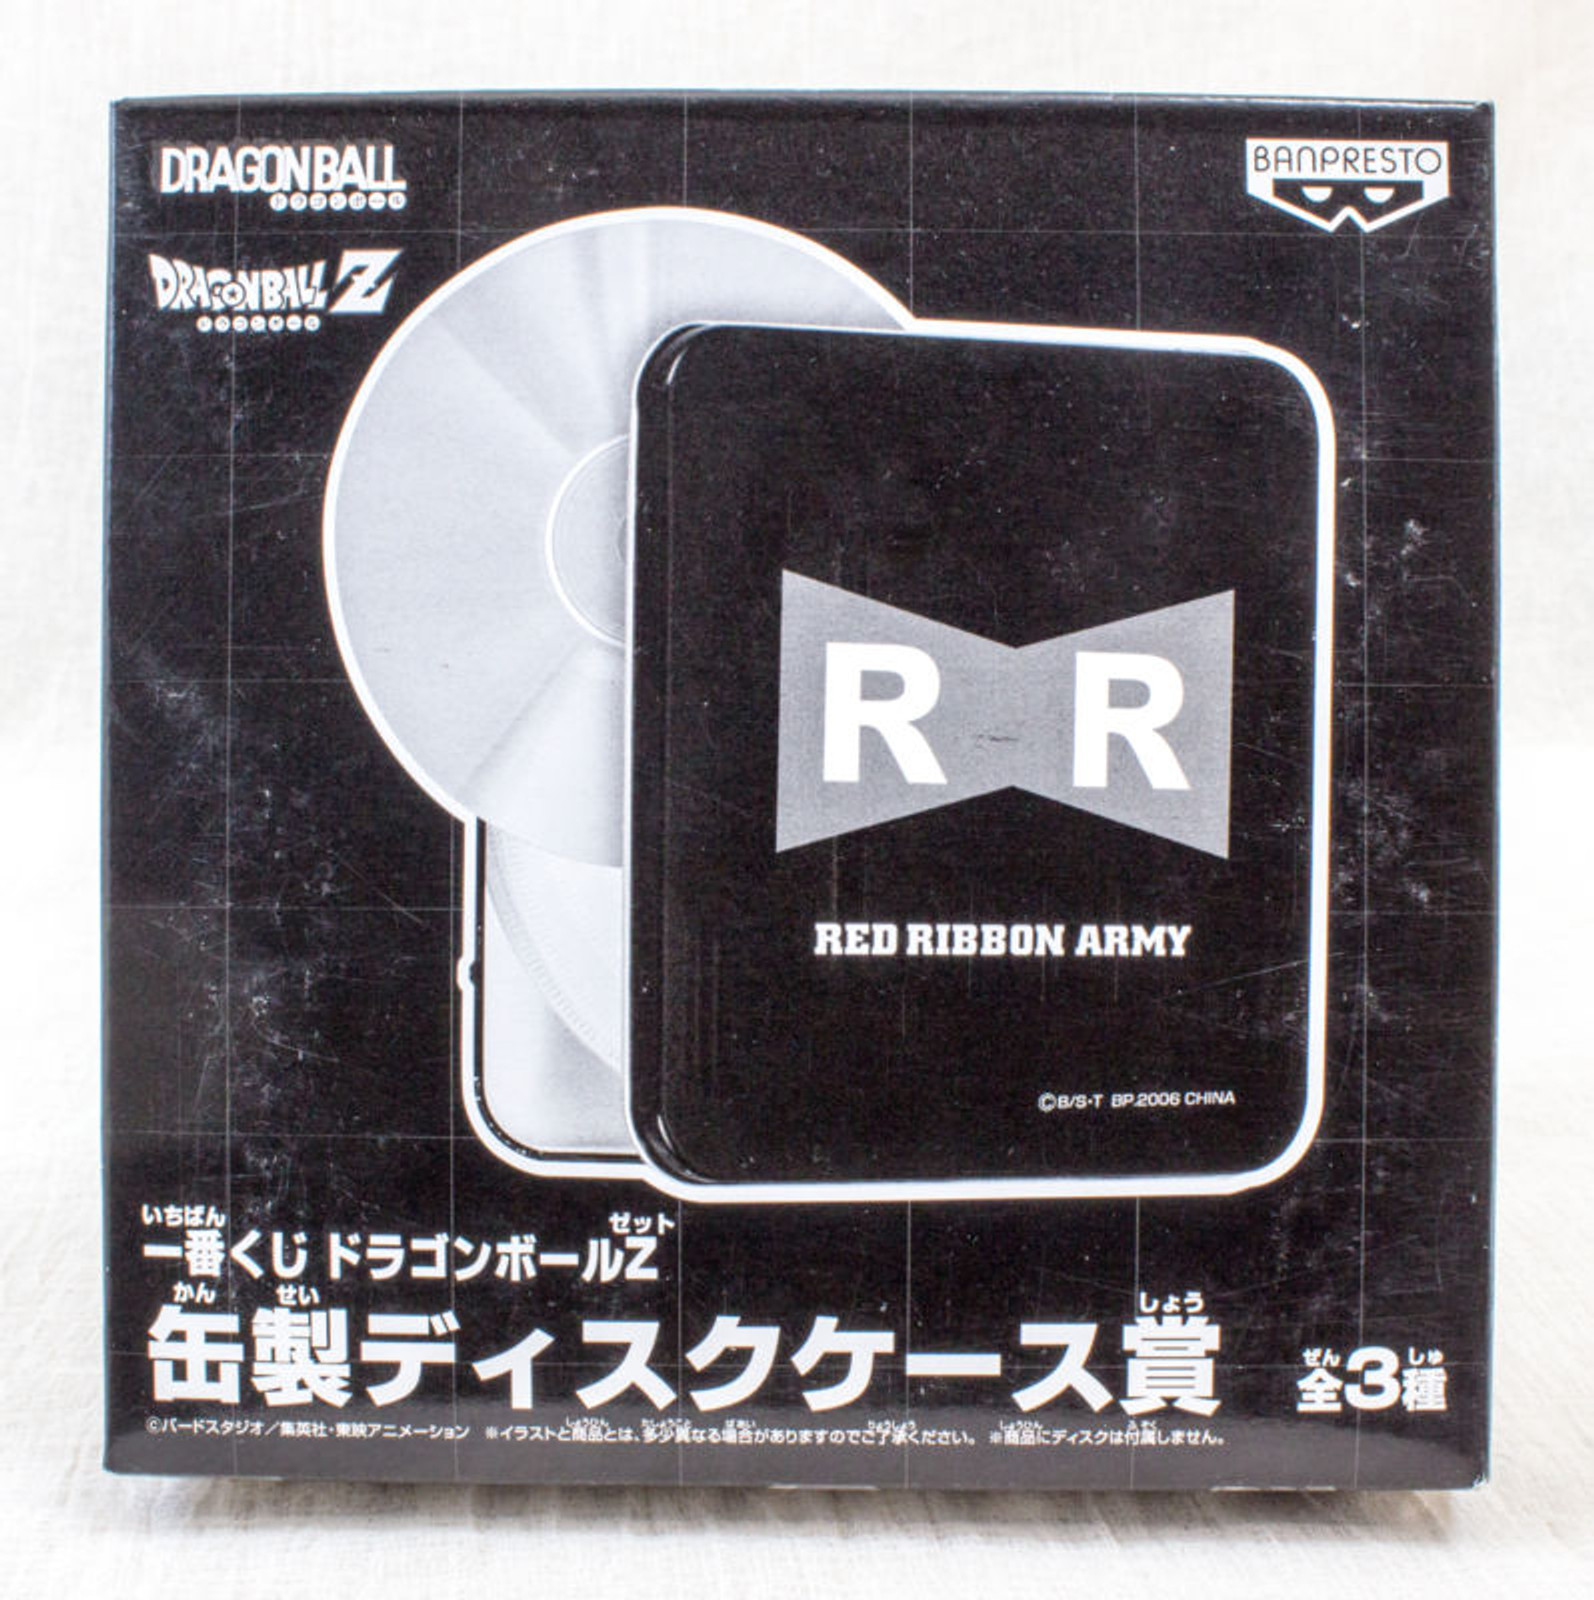 Dragon Ball Z Can type Disc Case Red Ribbon Amy Banpresto JAPAN ANIME MANGA